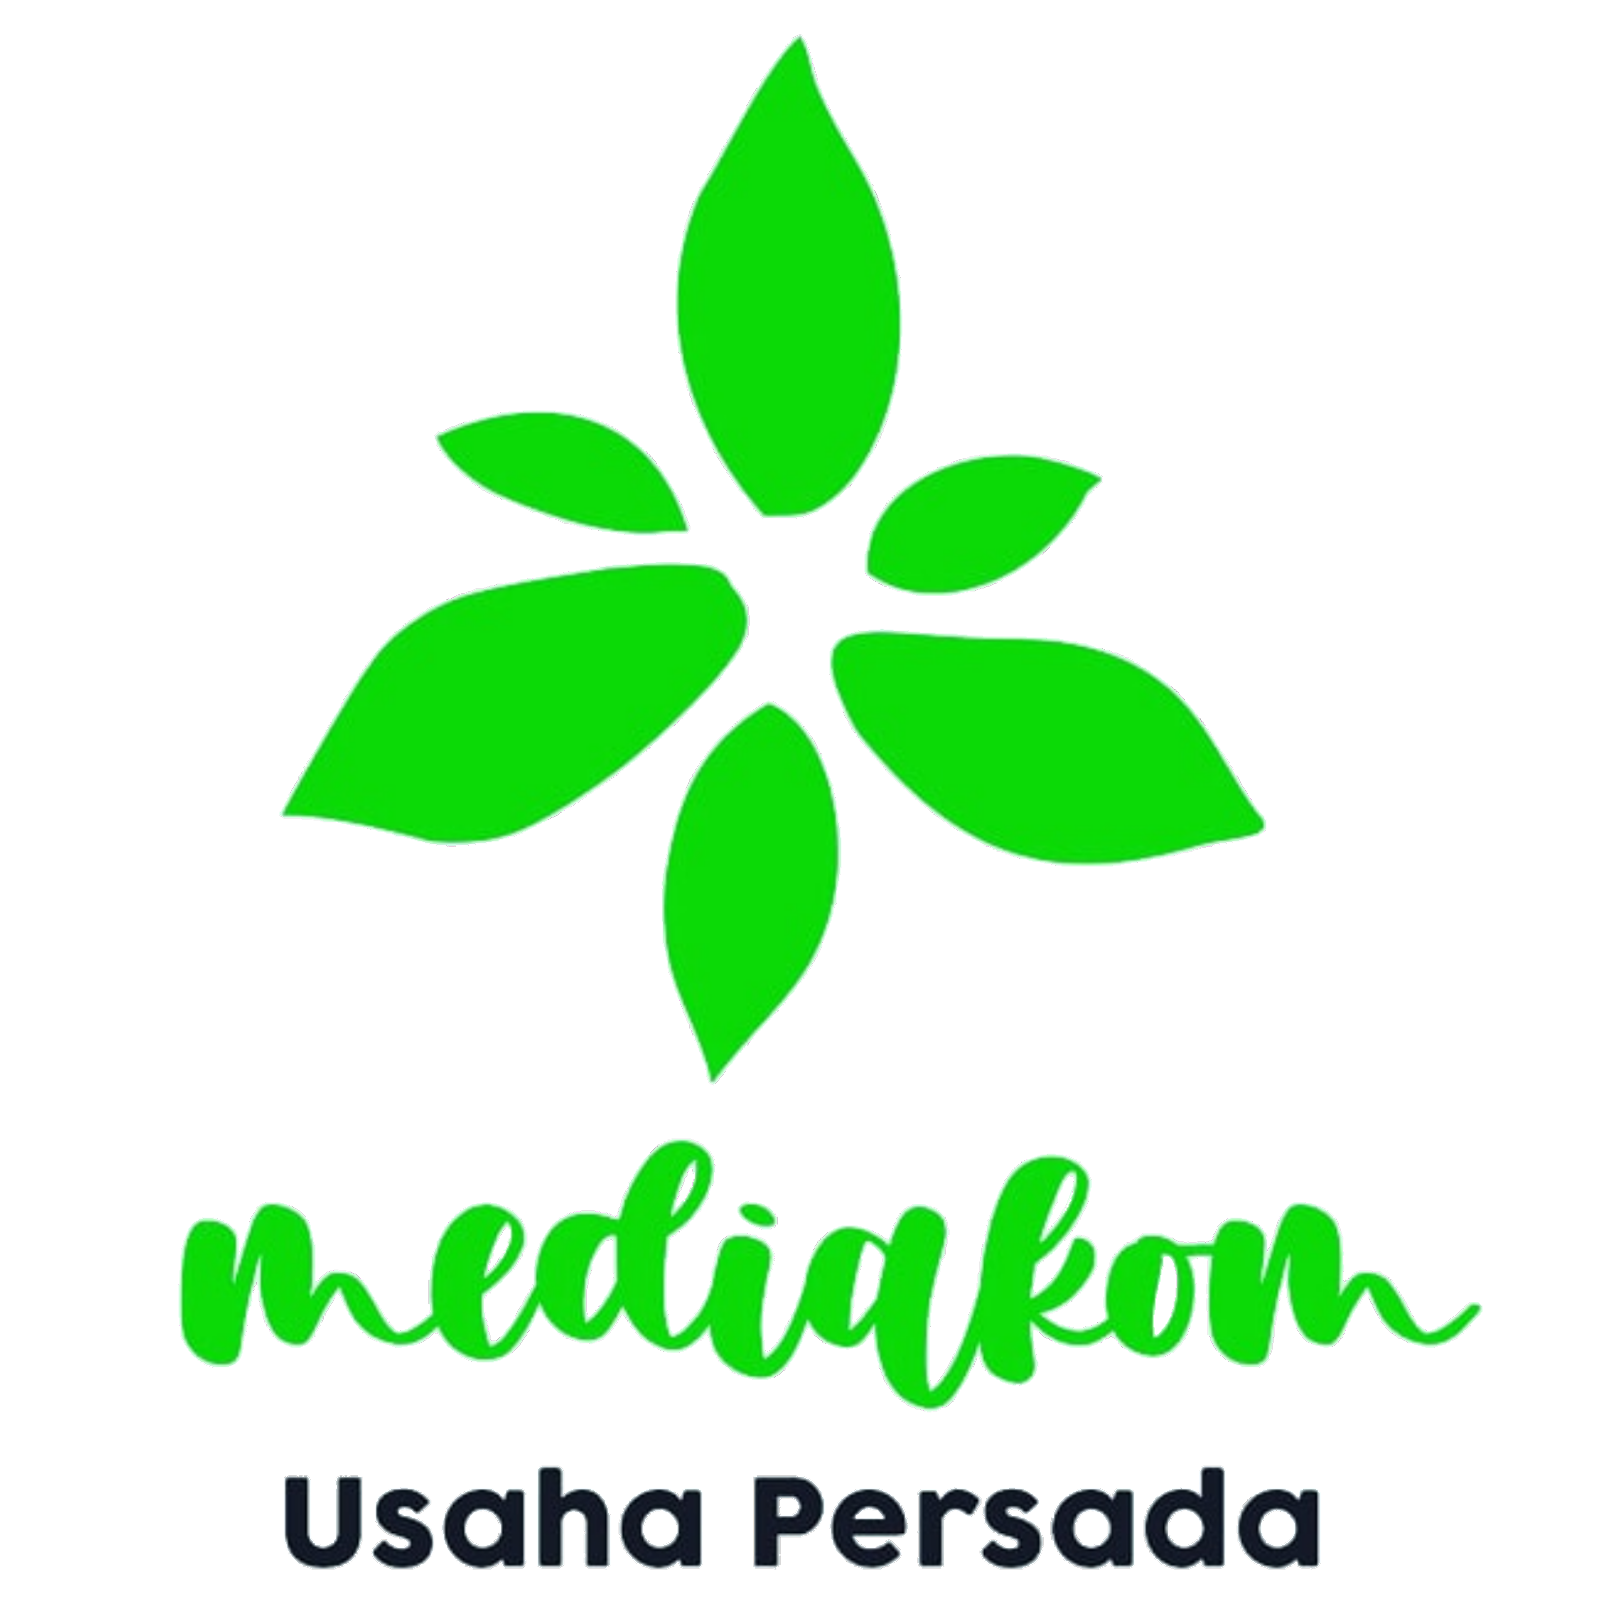 Mediacom Usaha Persada